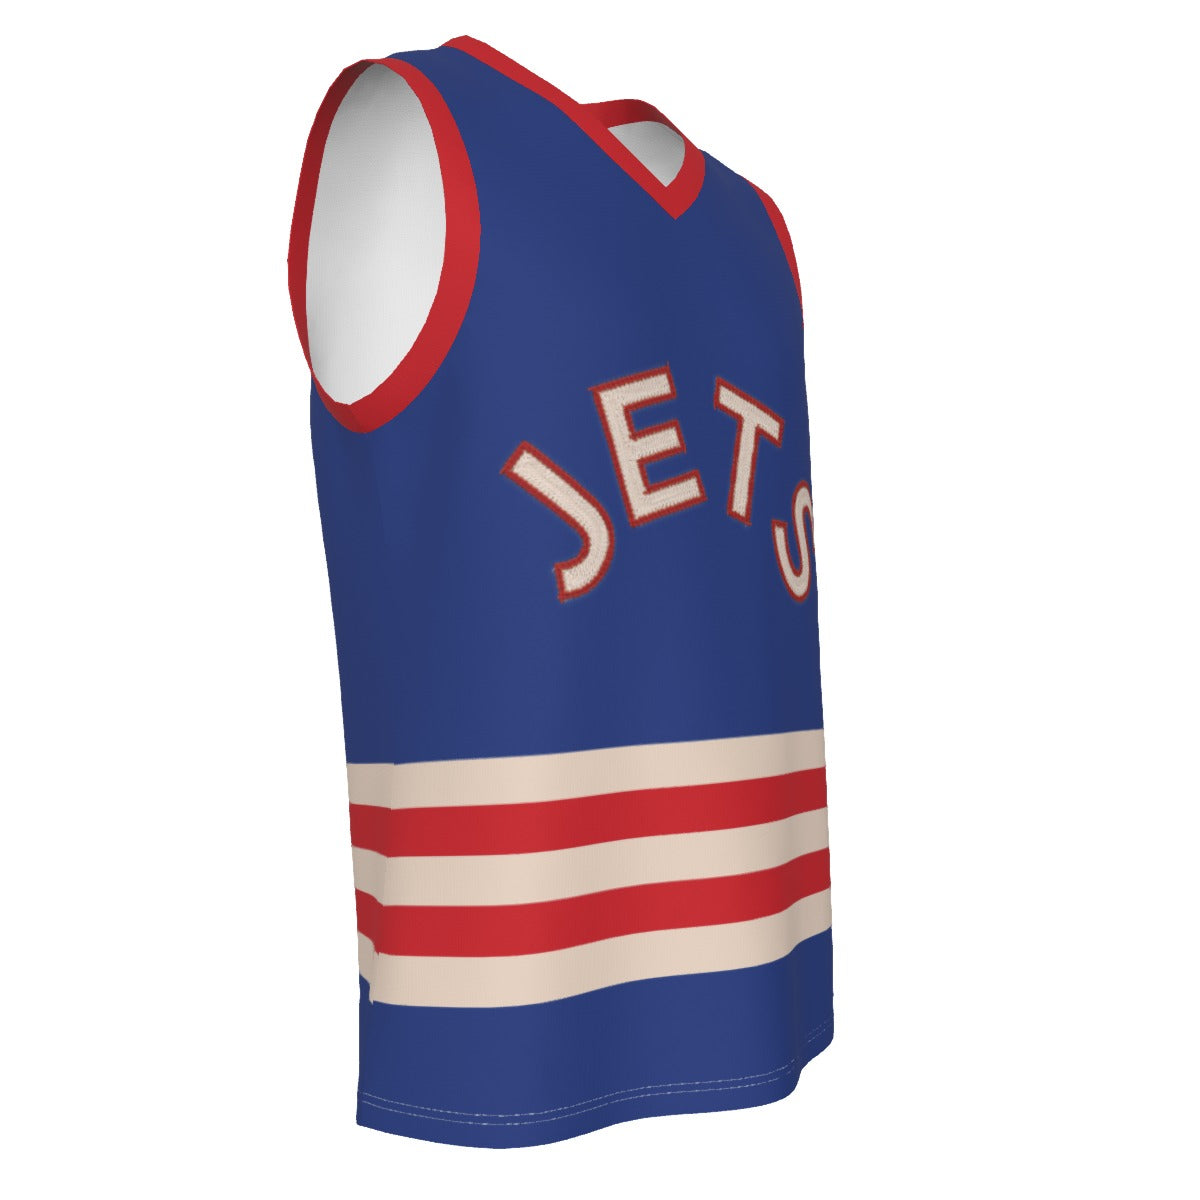 Jets Customizable V Neck Basketball Top